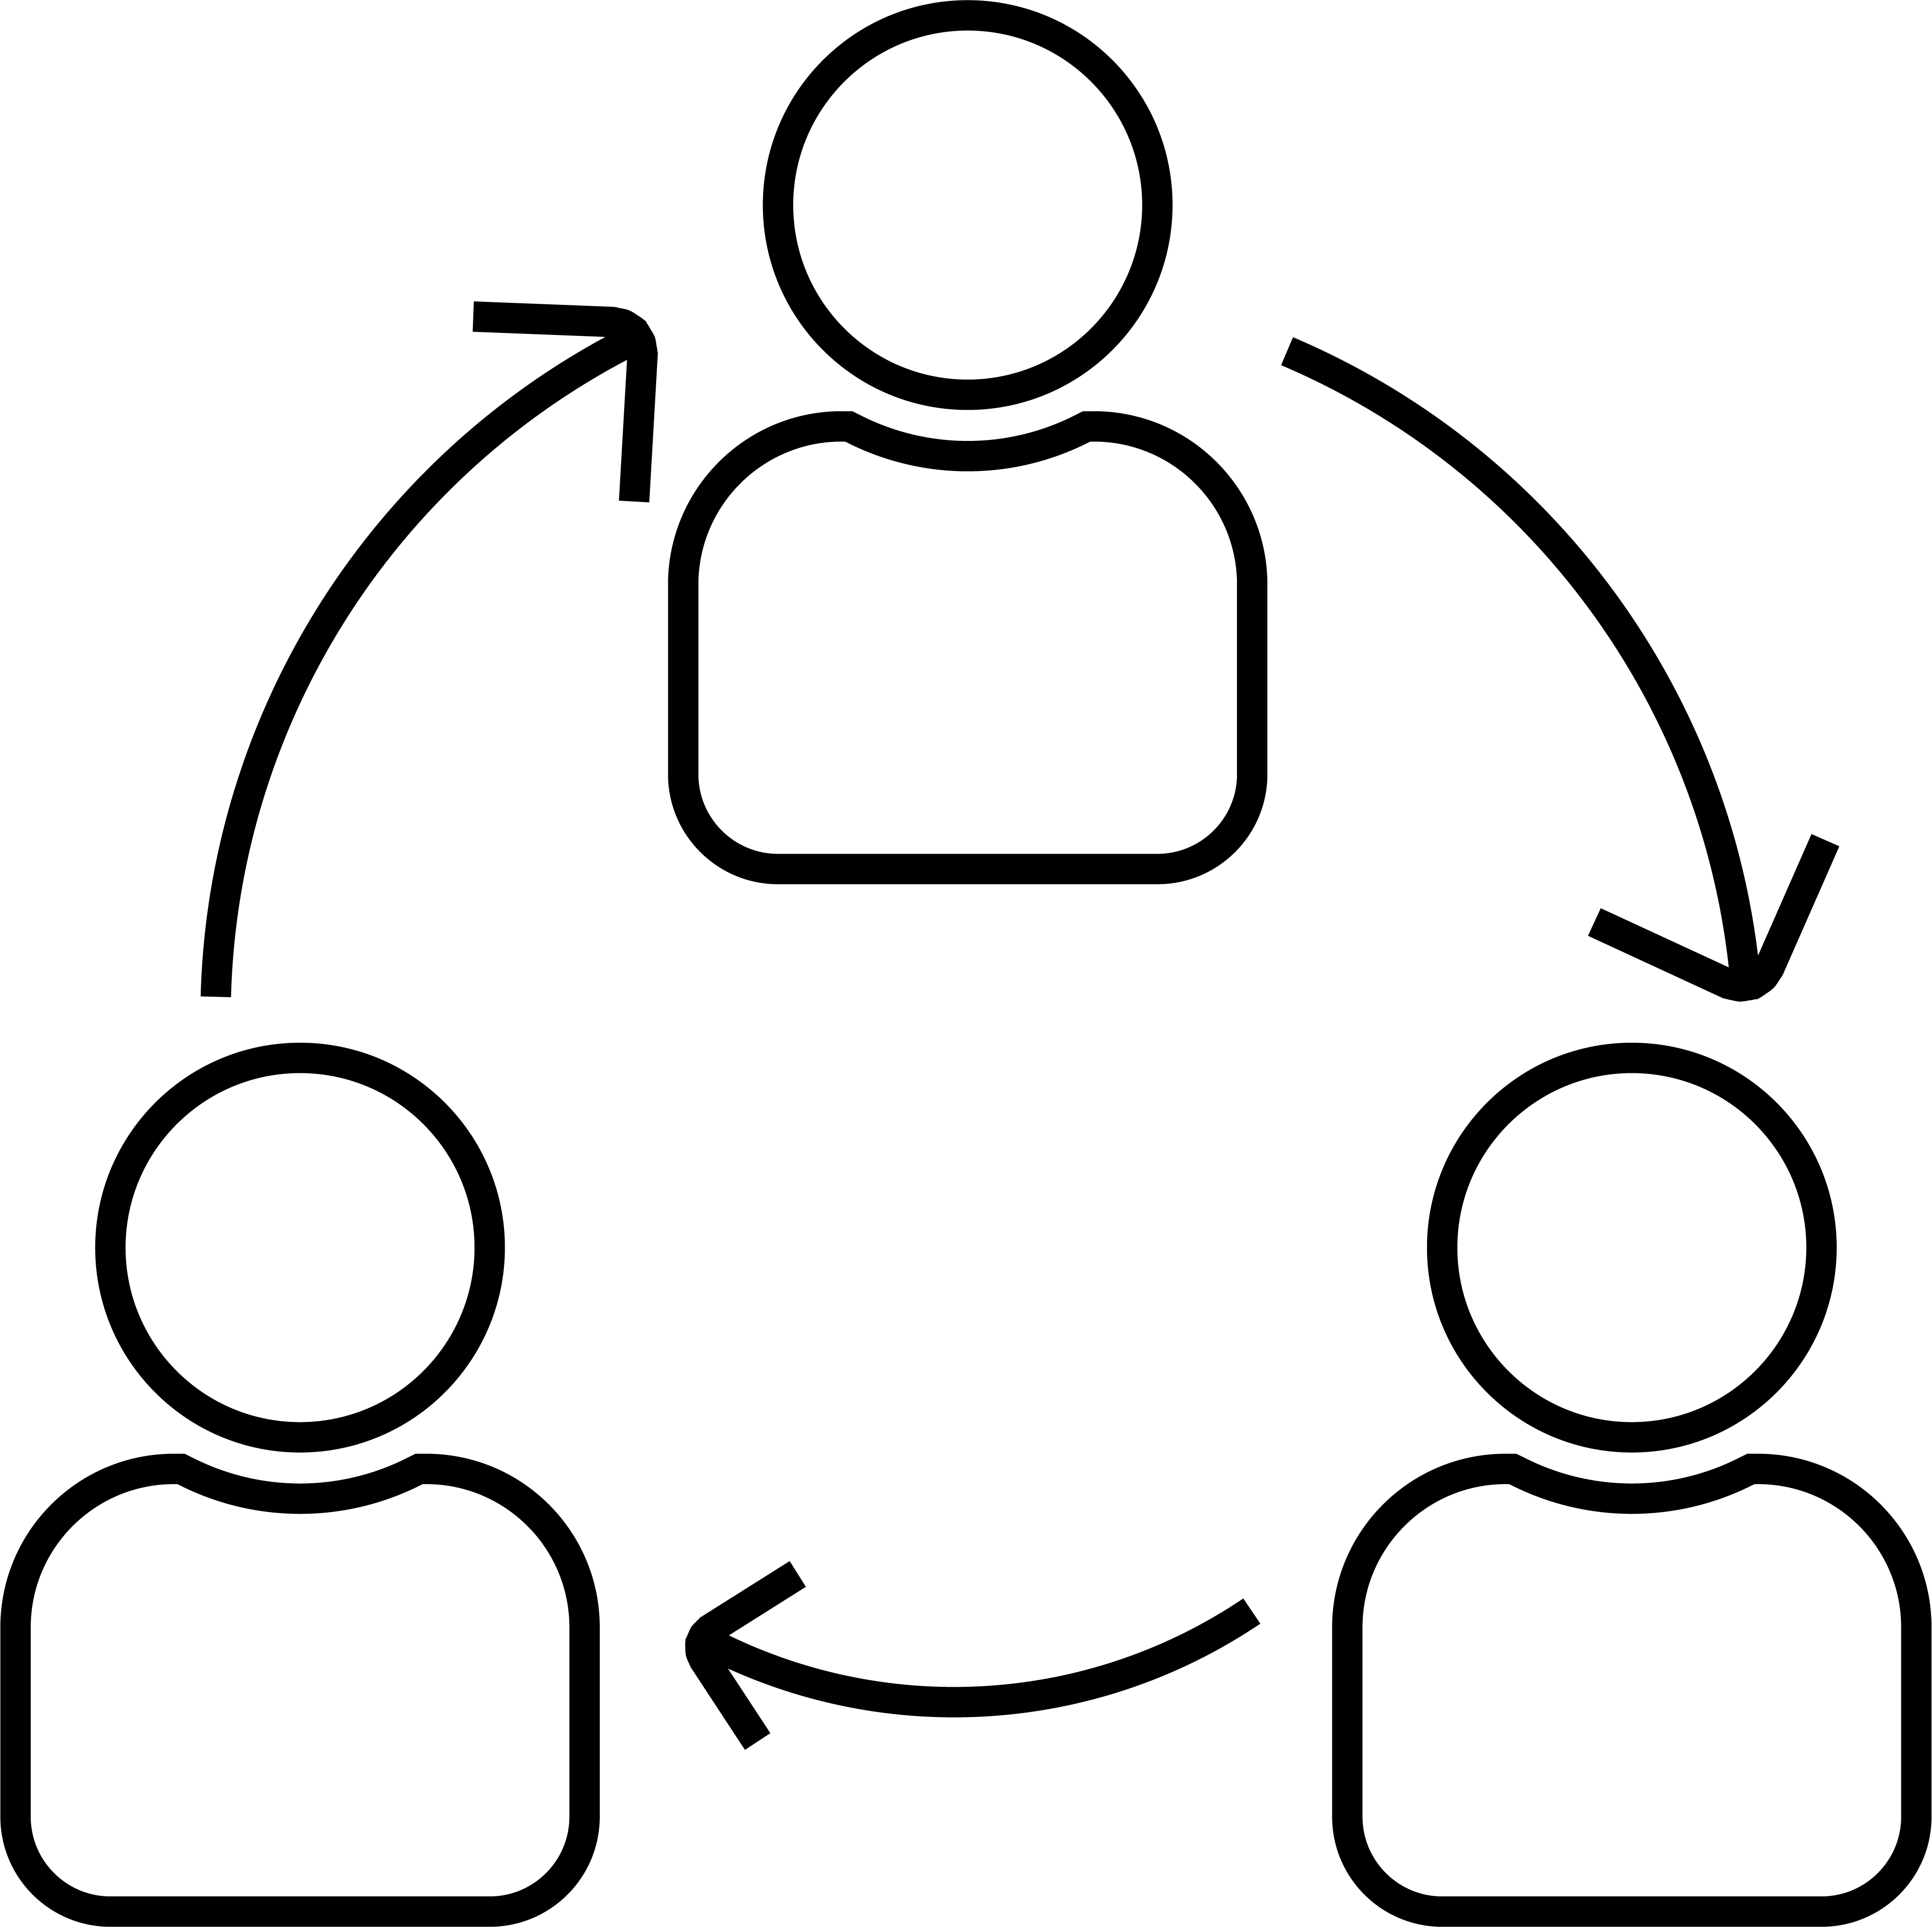 A logo design of Corporate Goevrnance